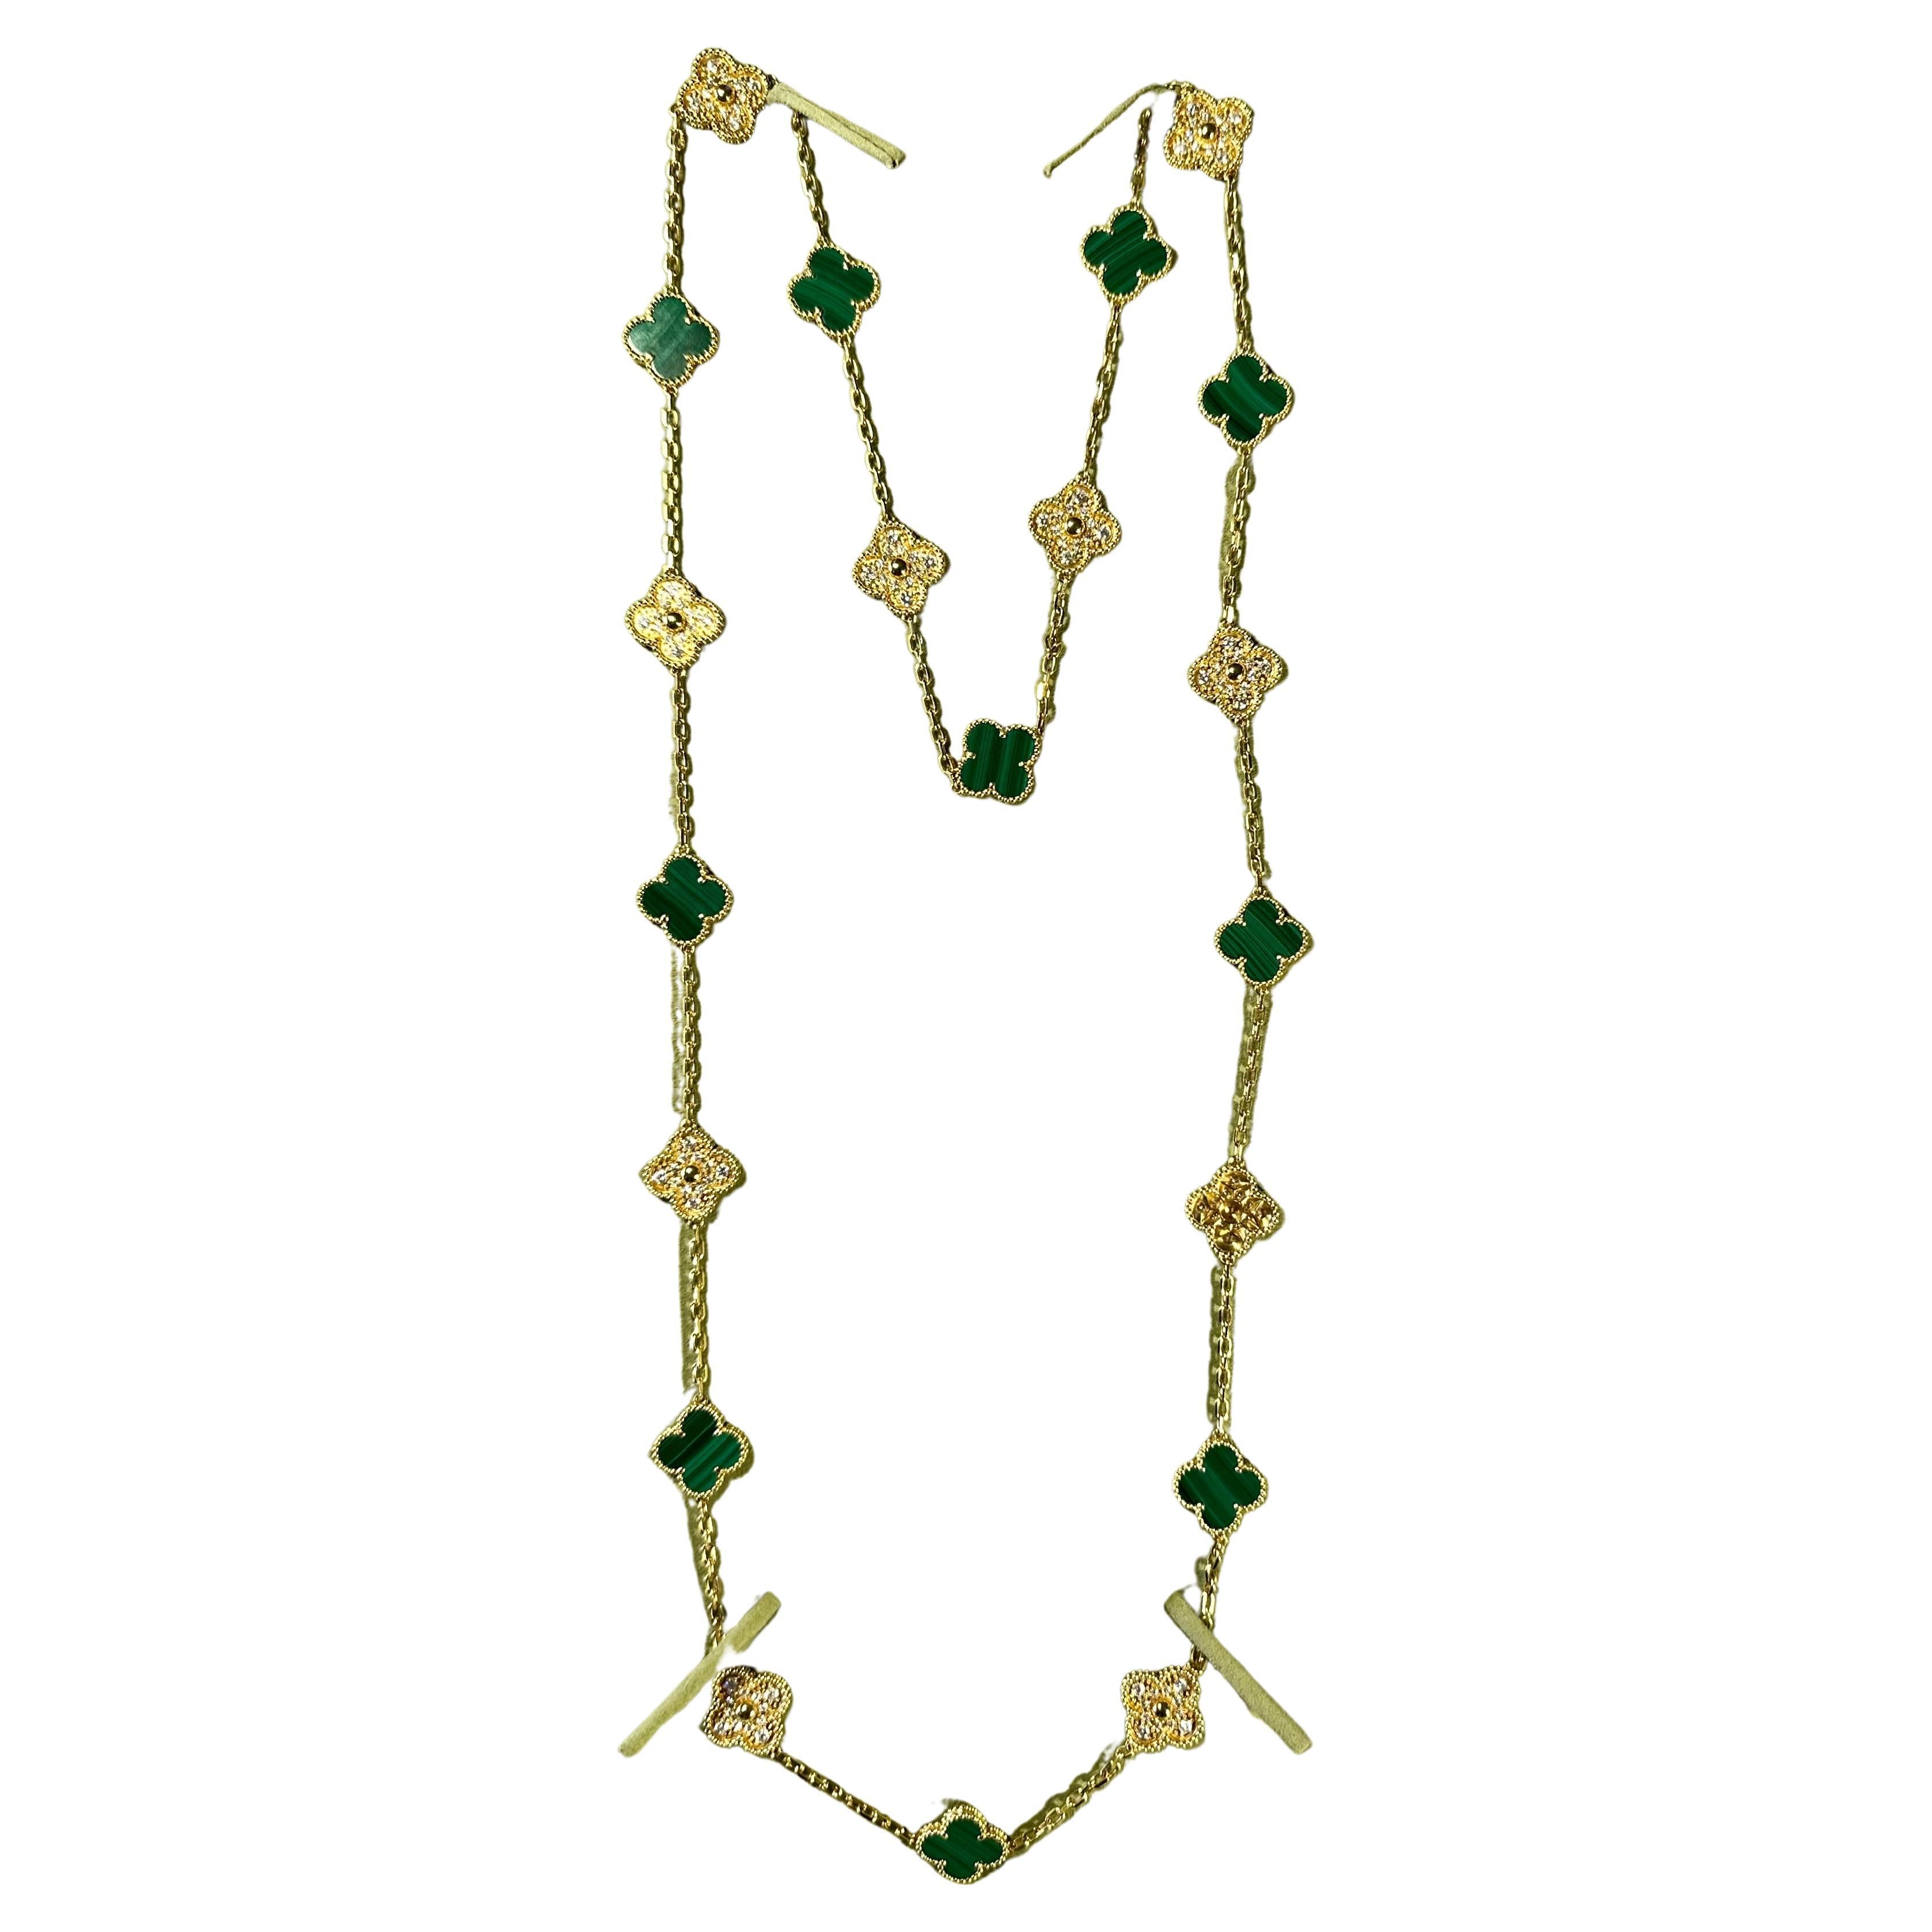 Ce collier vintage classique Van Cleef & Arpels est réalisé en or jaune 18 carats et présente 20 motifs de trèfle porte-bonheur incrustés de malachite verte dans des montures de perles rondes. Fabriqué en France. 
Excellent état. Certificat